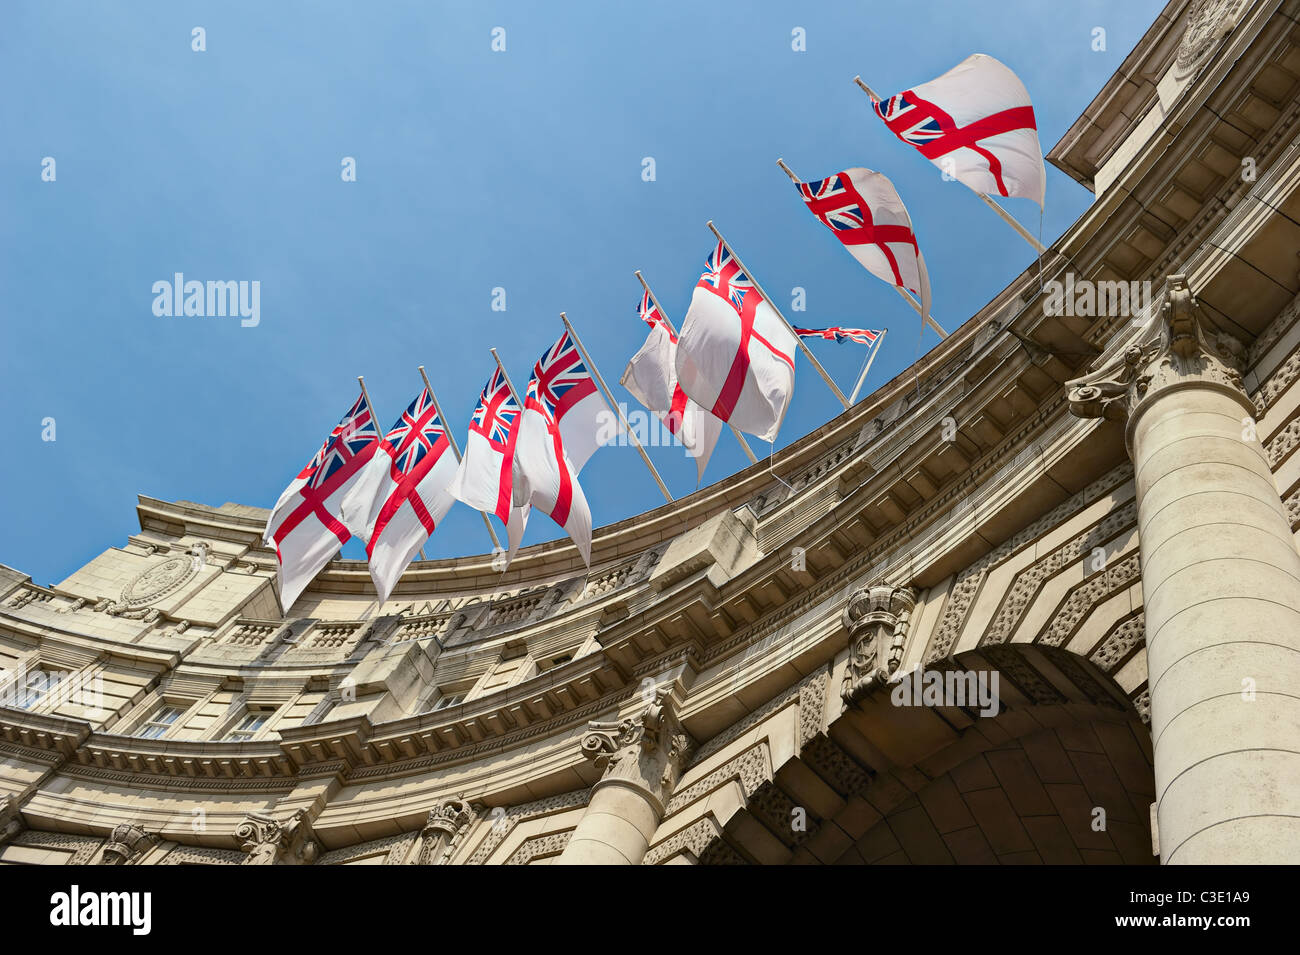 Pavillon blanc drapeaux flottants sur l'Admiralty Arch, London, England, UK Banque D'Images